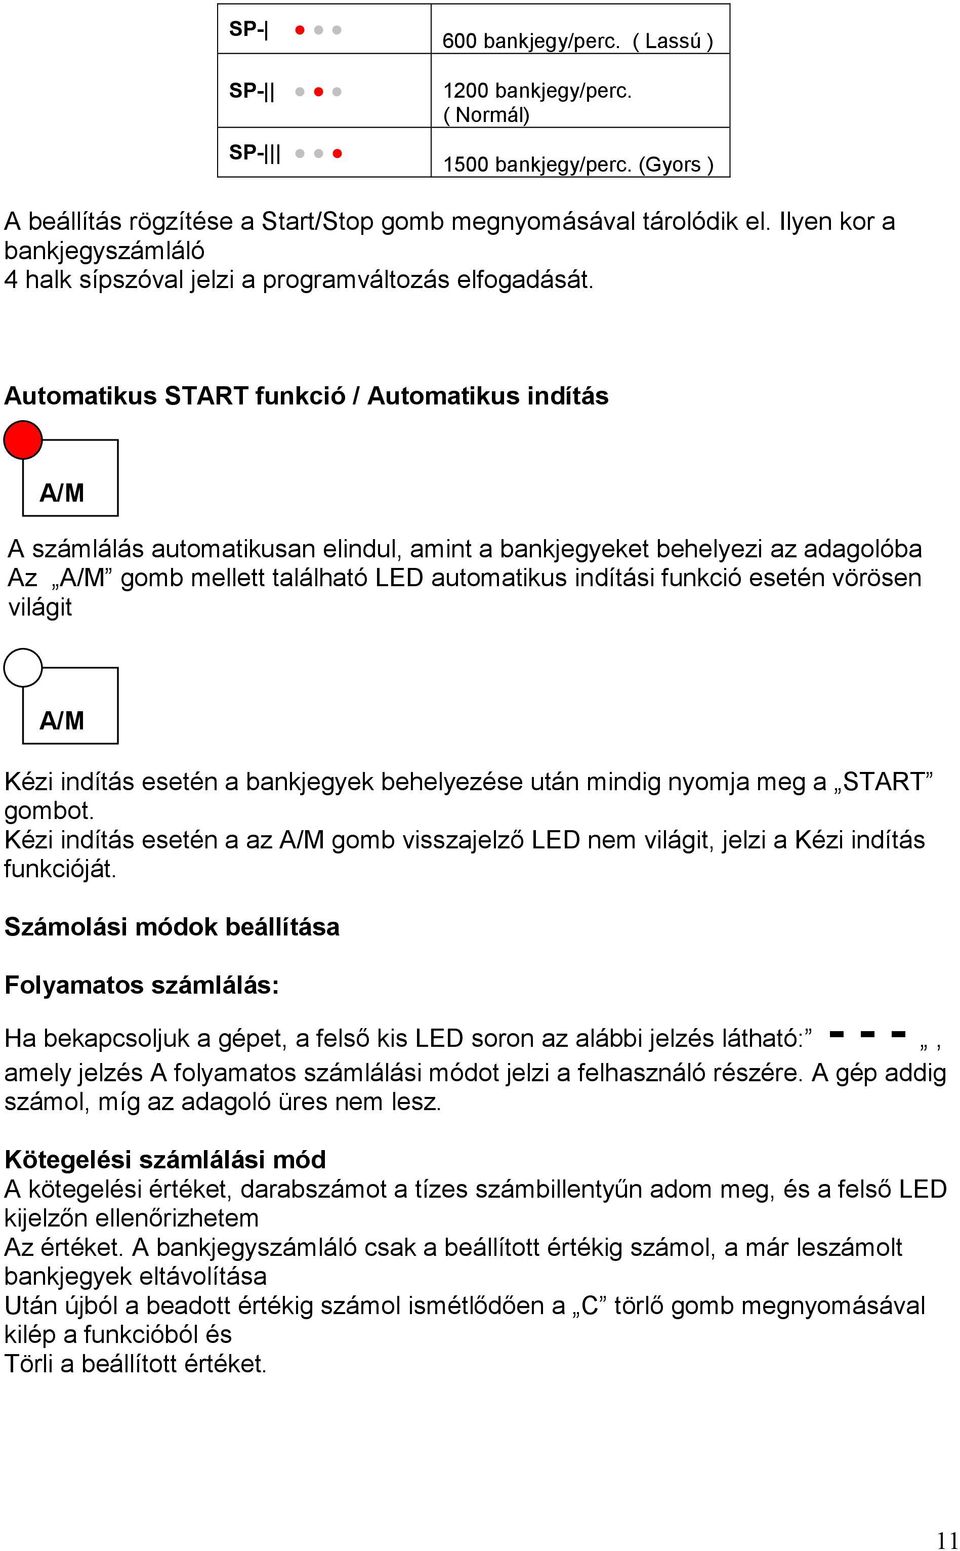 Automatikus START funkció / Automatikus indítás A/M A számlálás automatikusan elindul, amint a bankjegyeket behelyezi az adagolóba Az A/M gomb mellett található LED automatikus indítási funkció